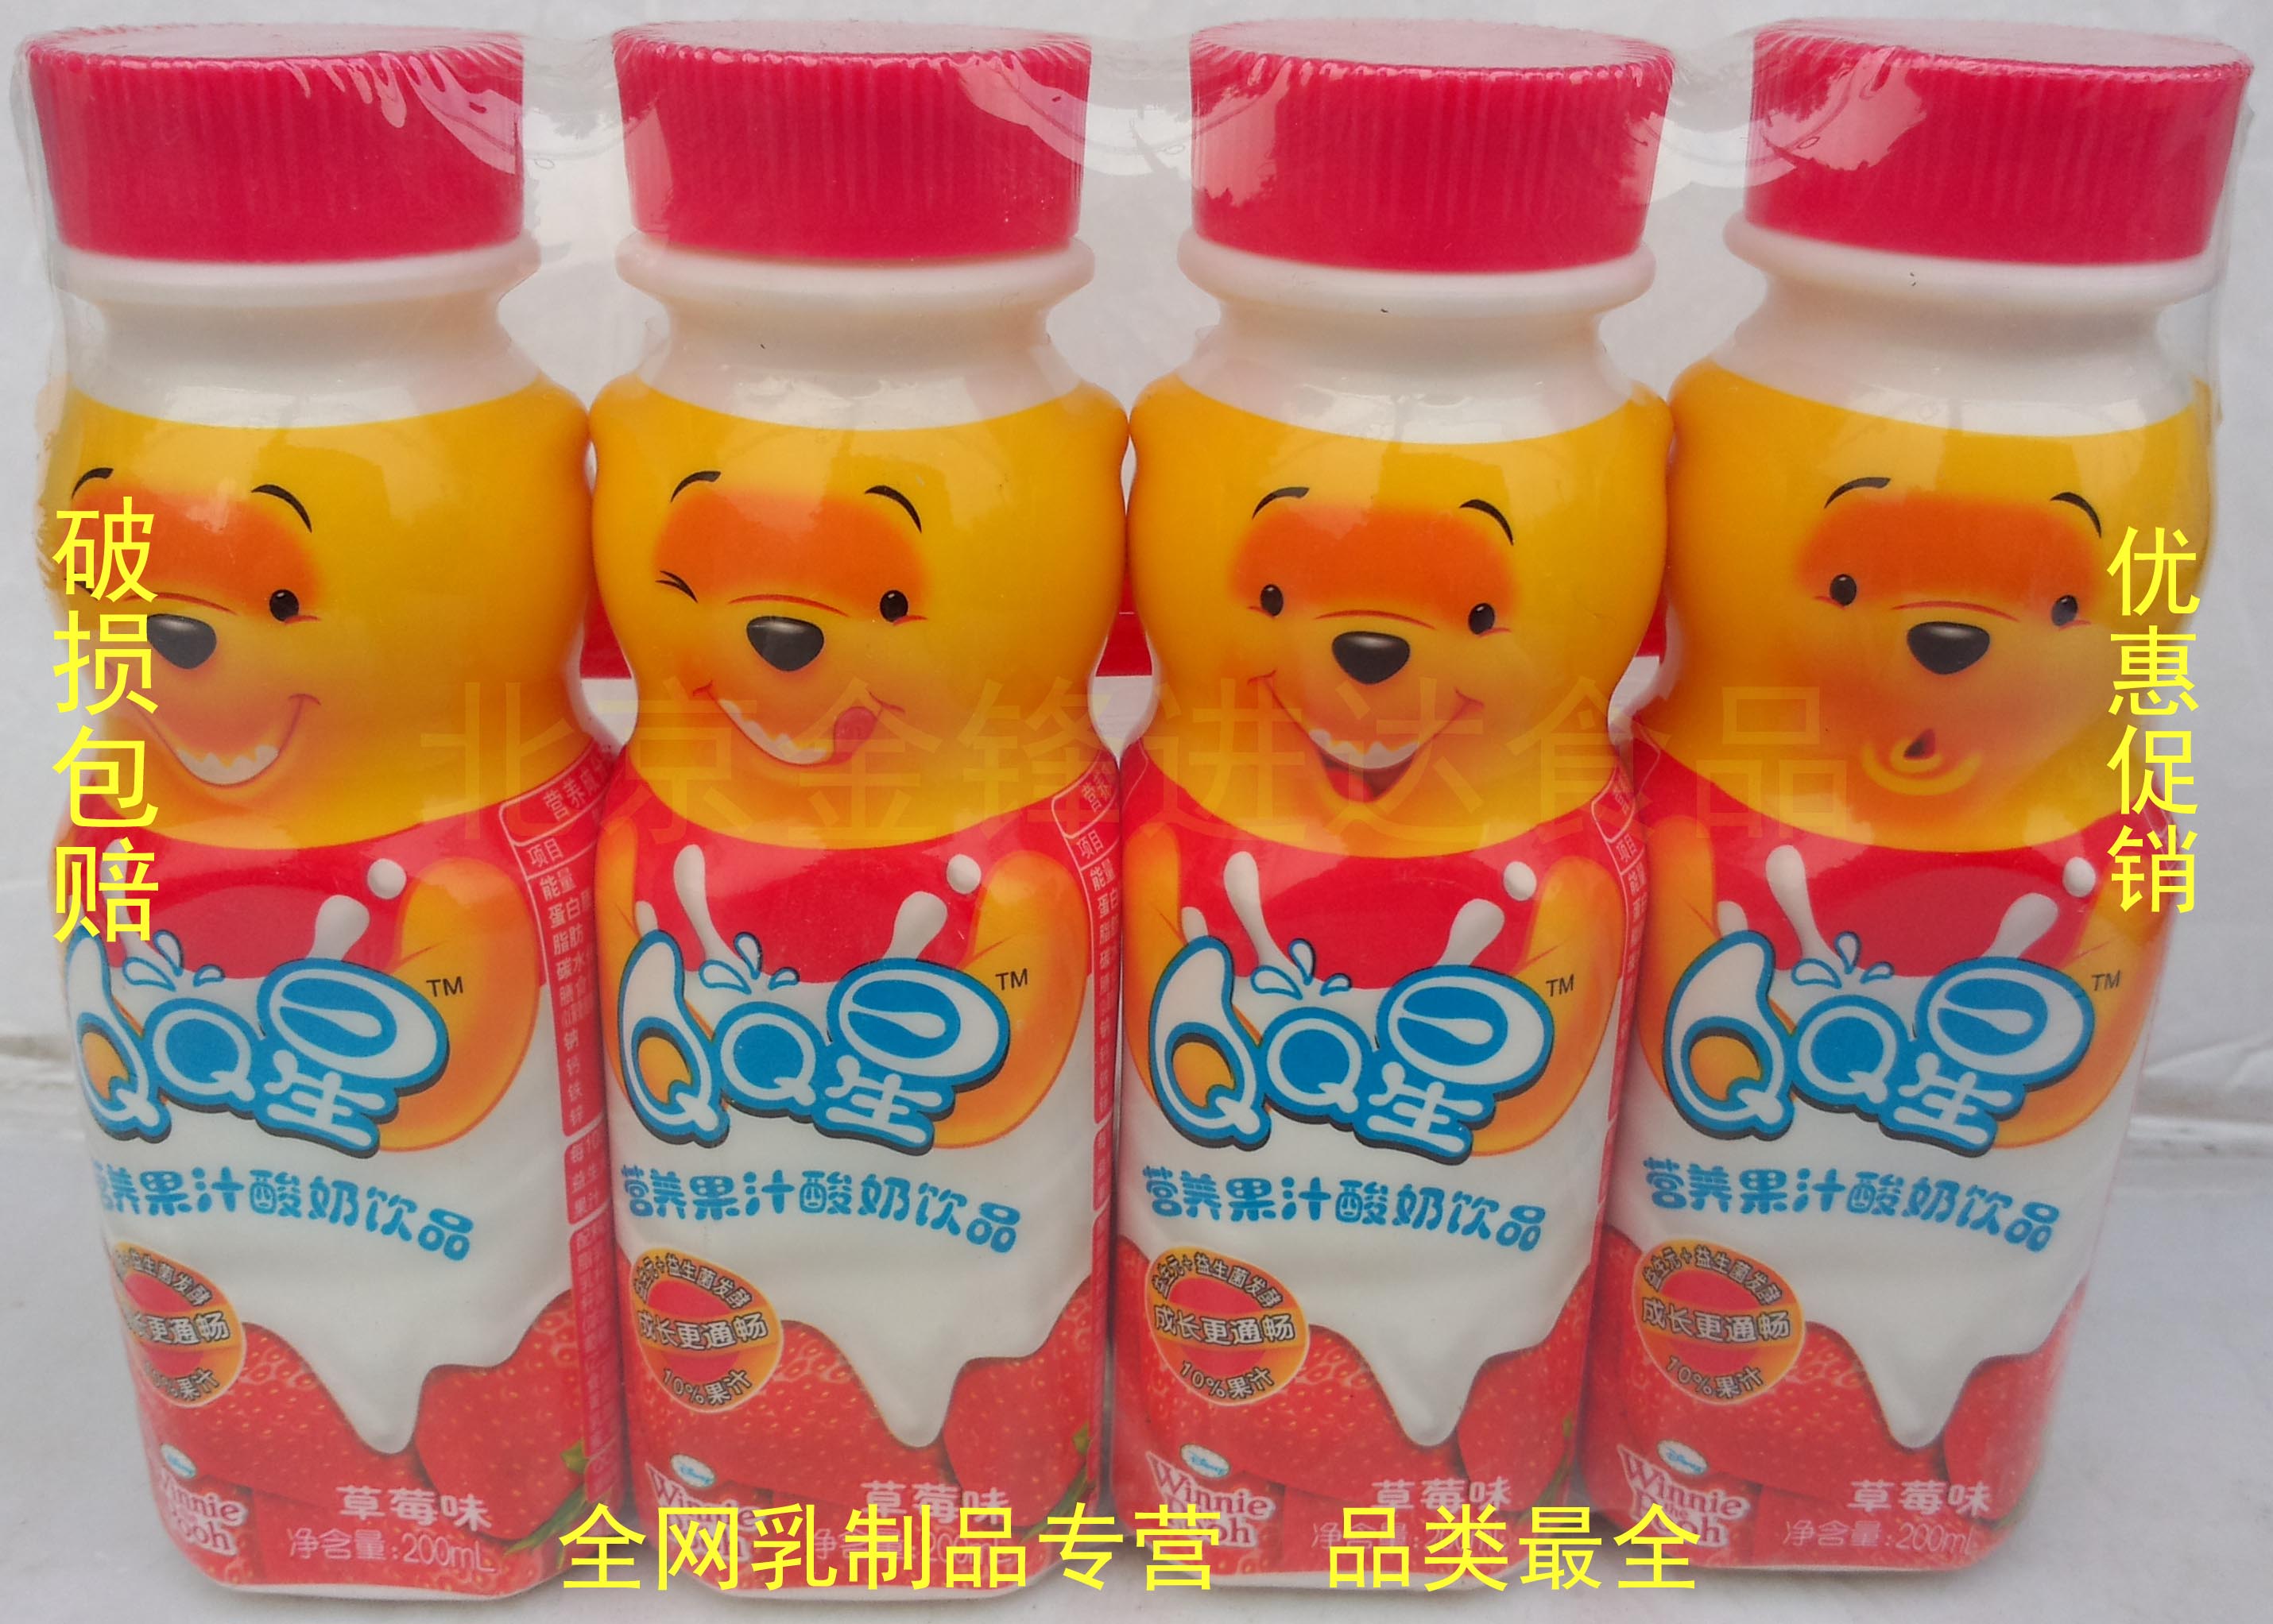 北京店伊利QQ星维尼熊营养果汁酸奶草莓味2